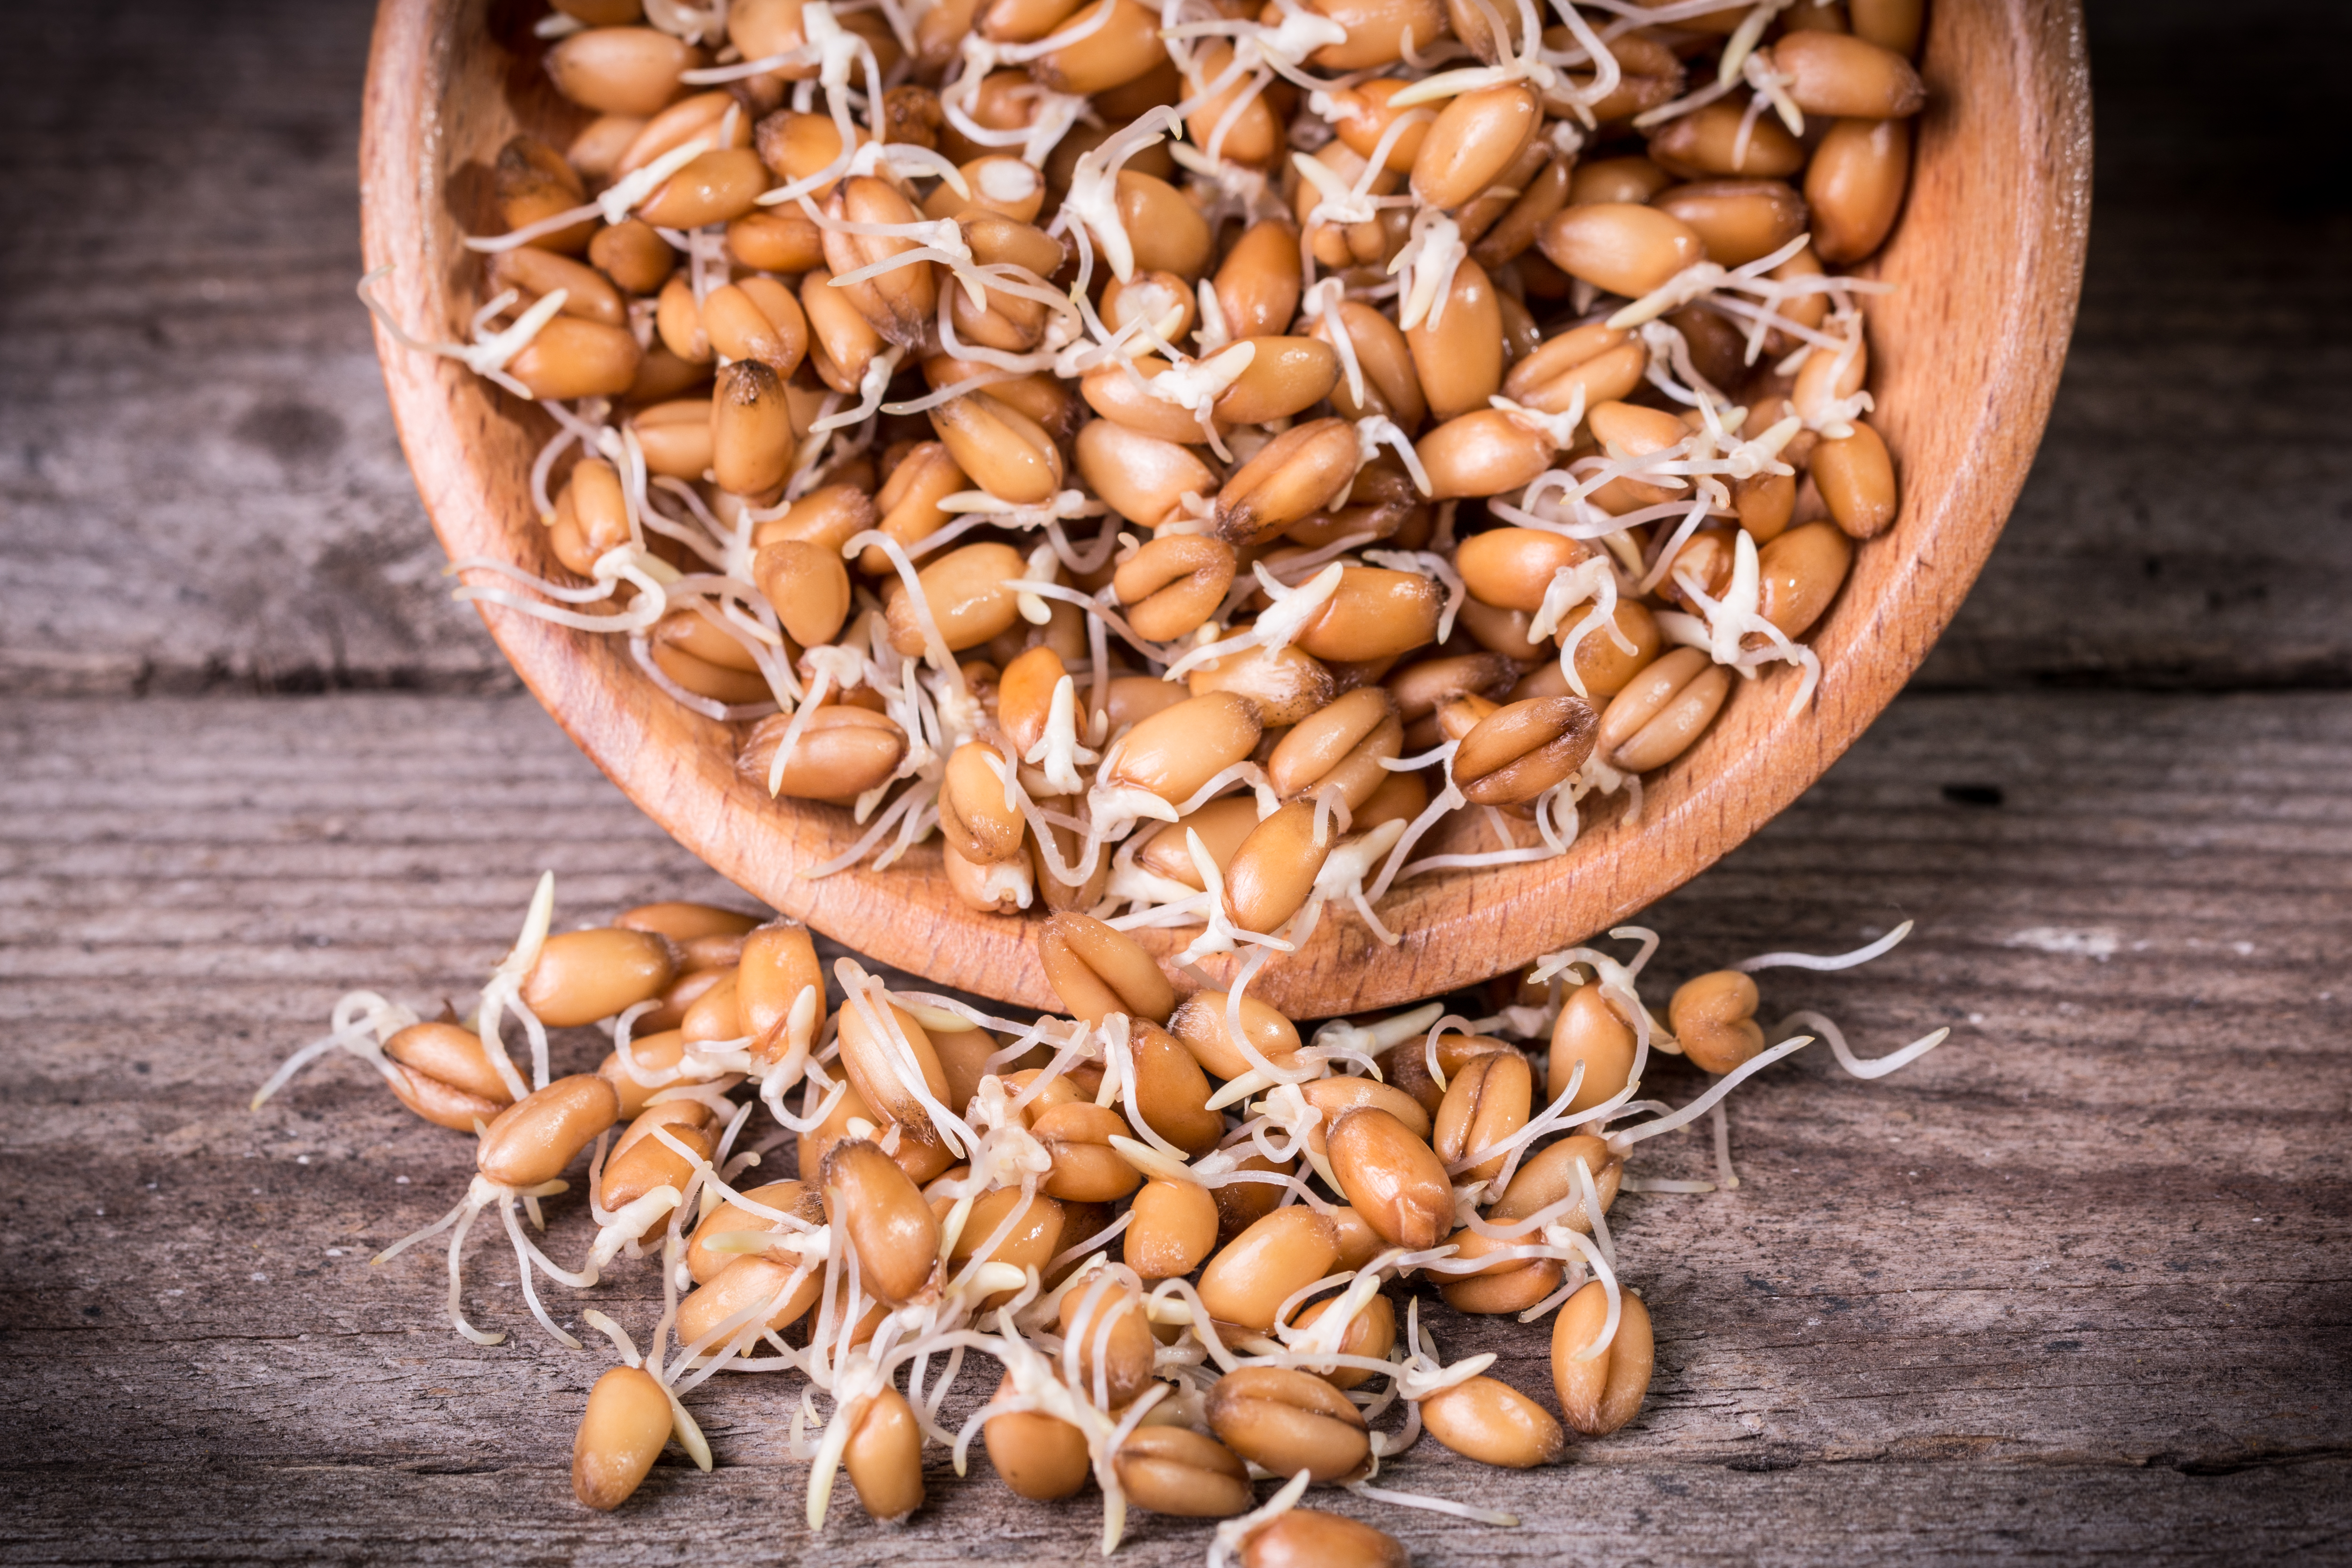 Suplementación: el grano de trigo dejó de ser un riesgo en la dieta